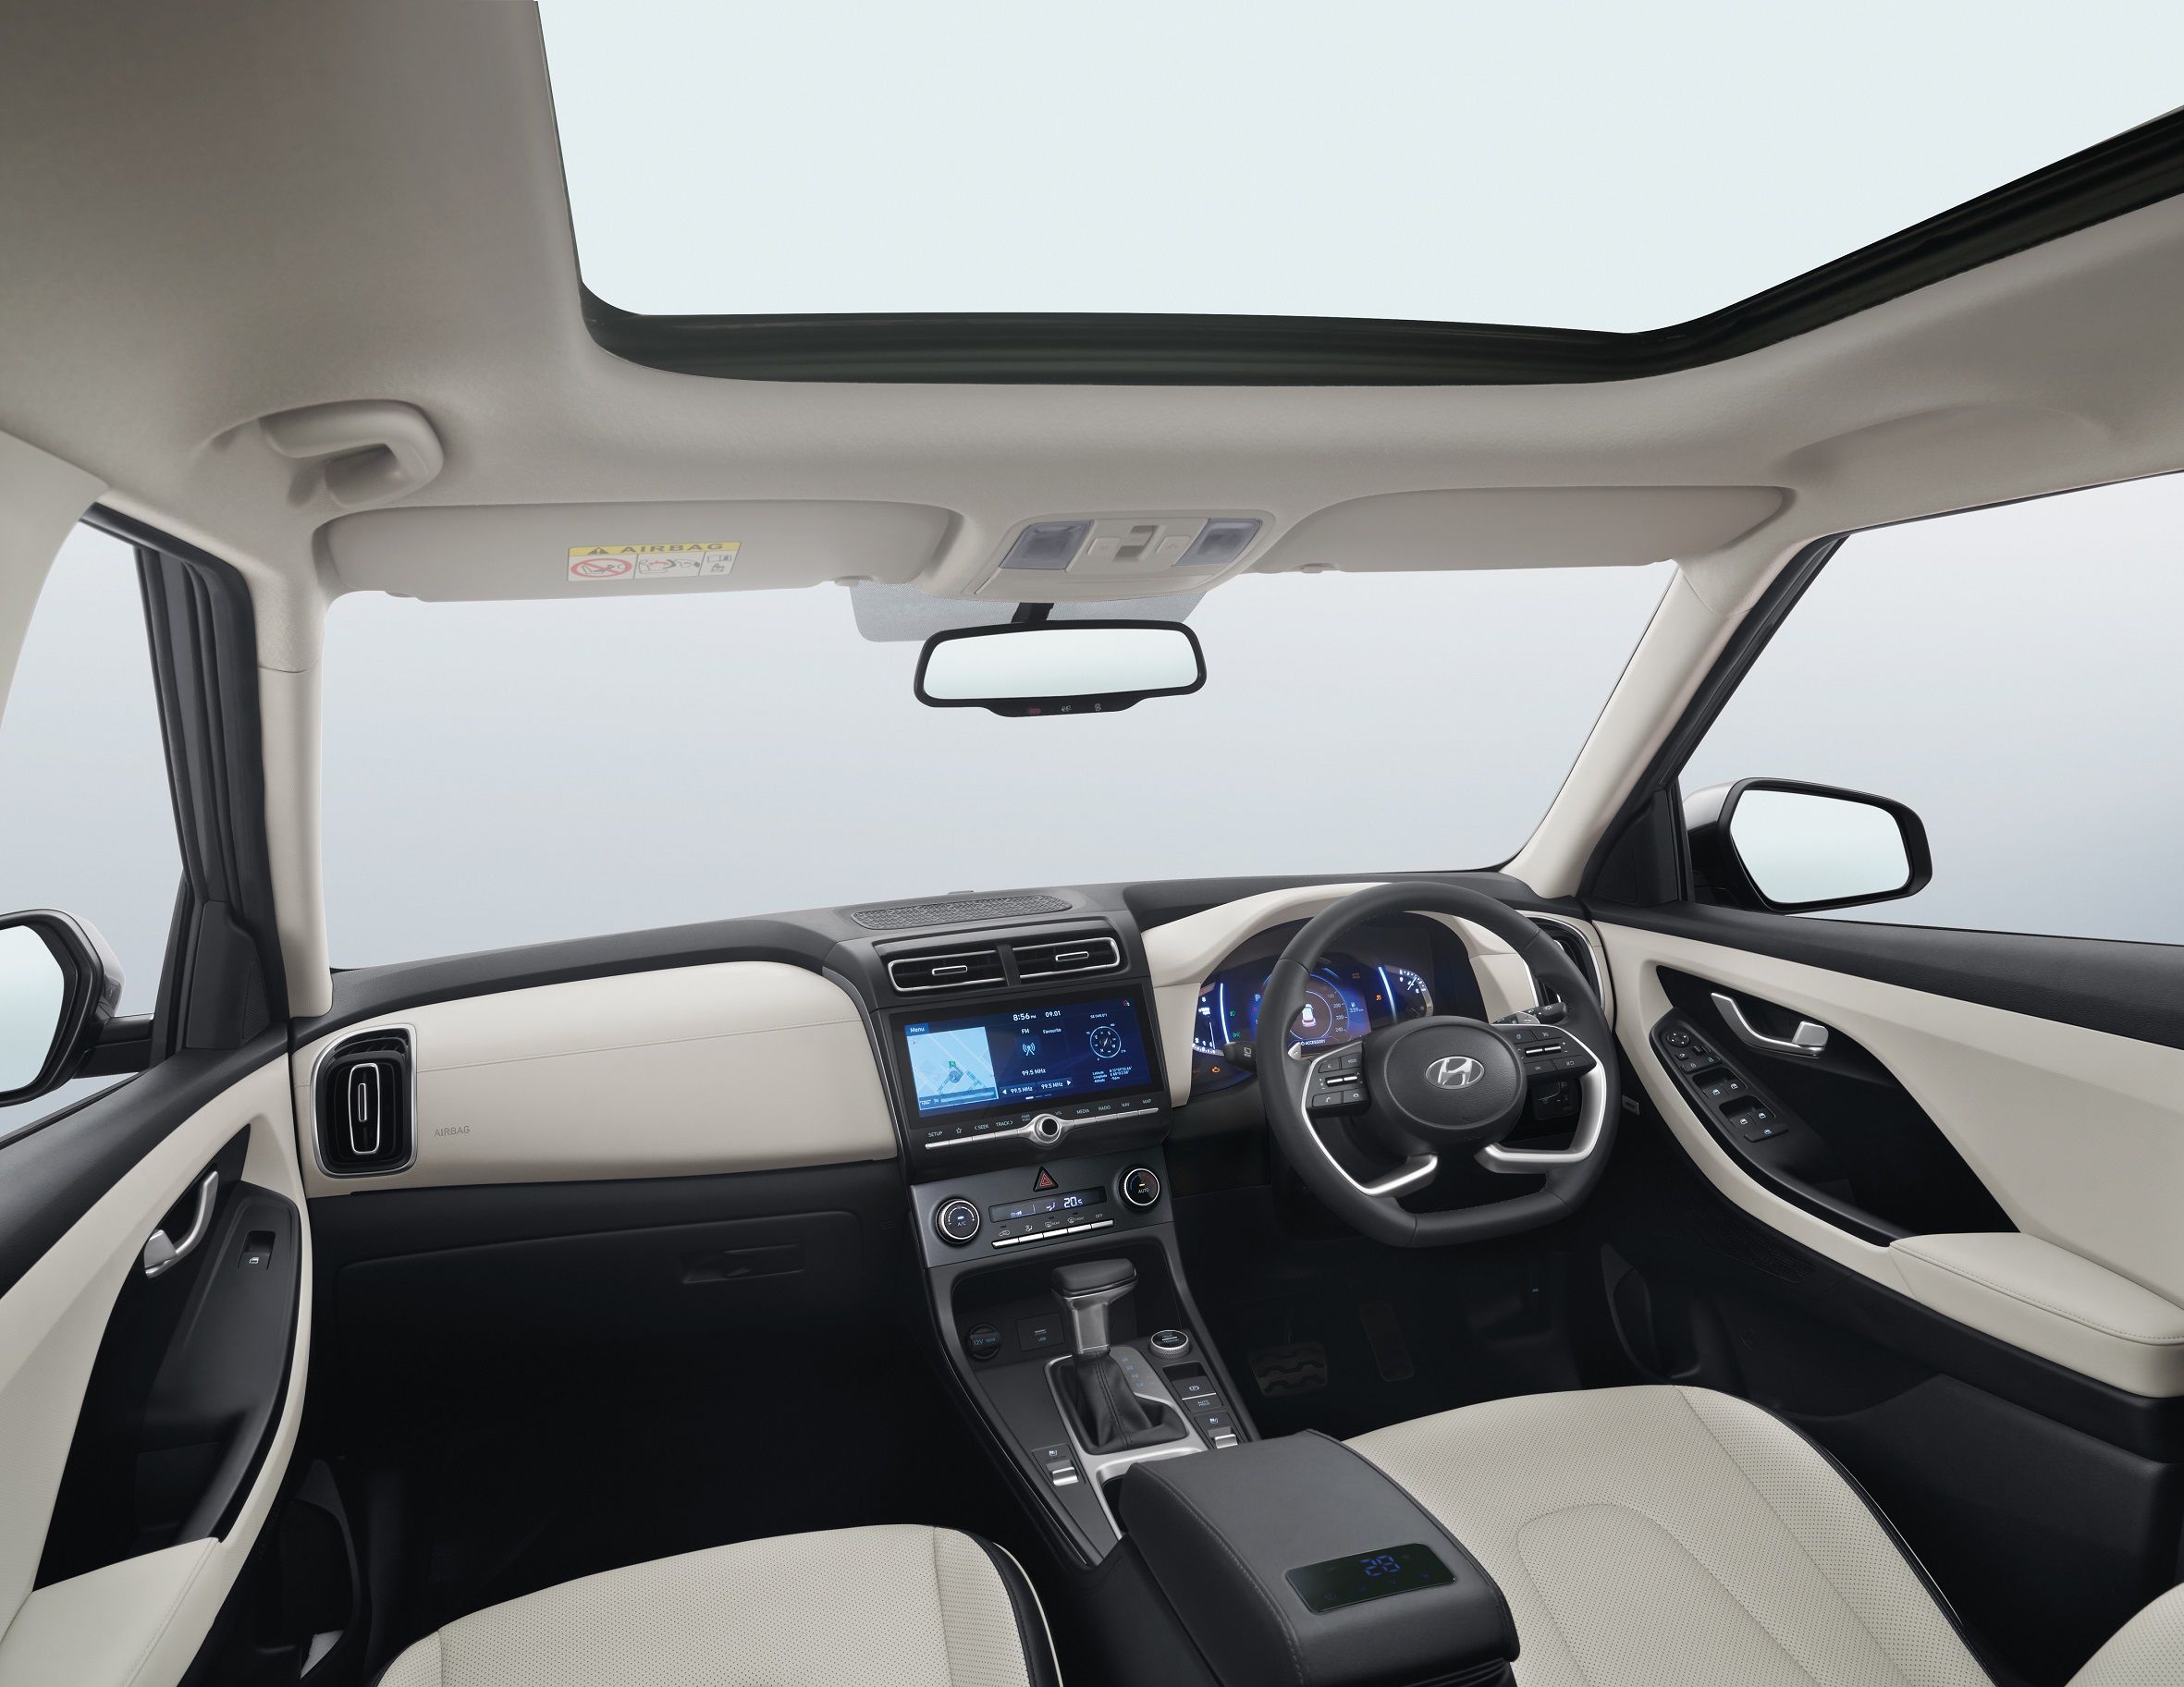 The interiors of the new Creta from Hyundai.